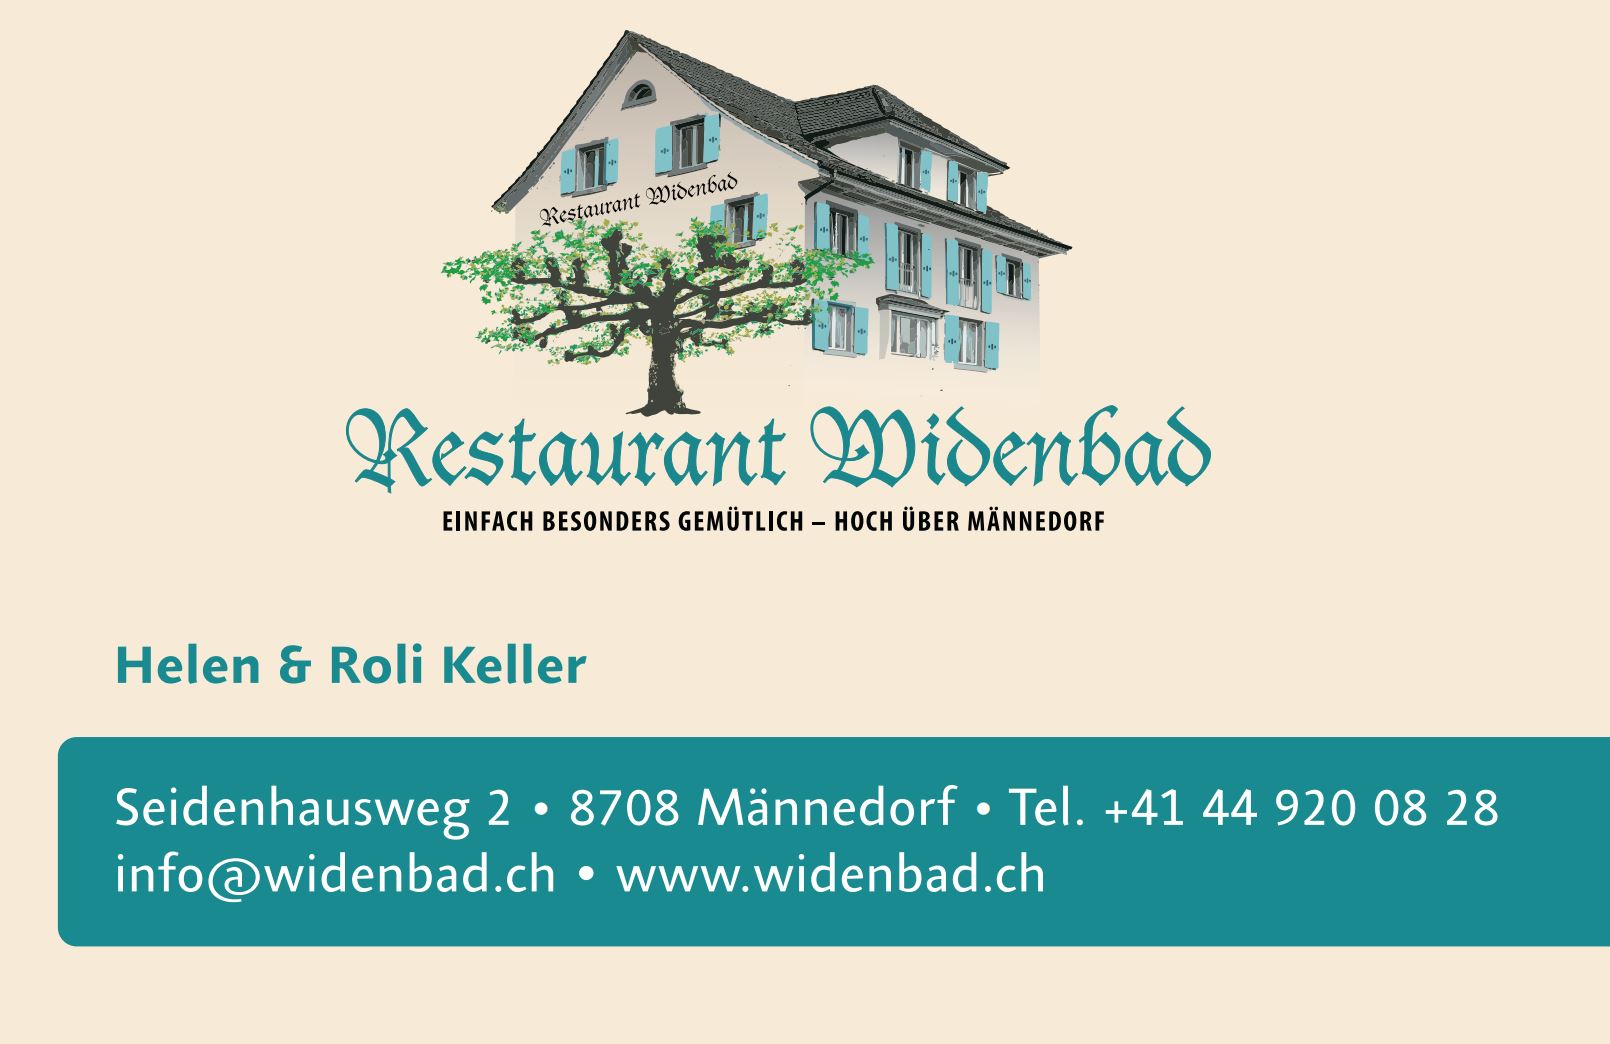 Restaurant Widenbad